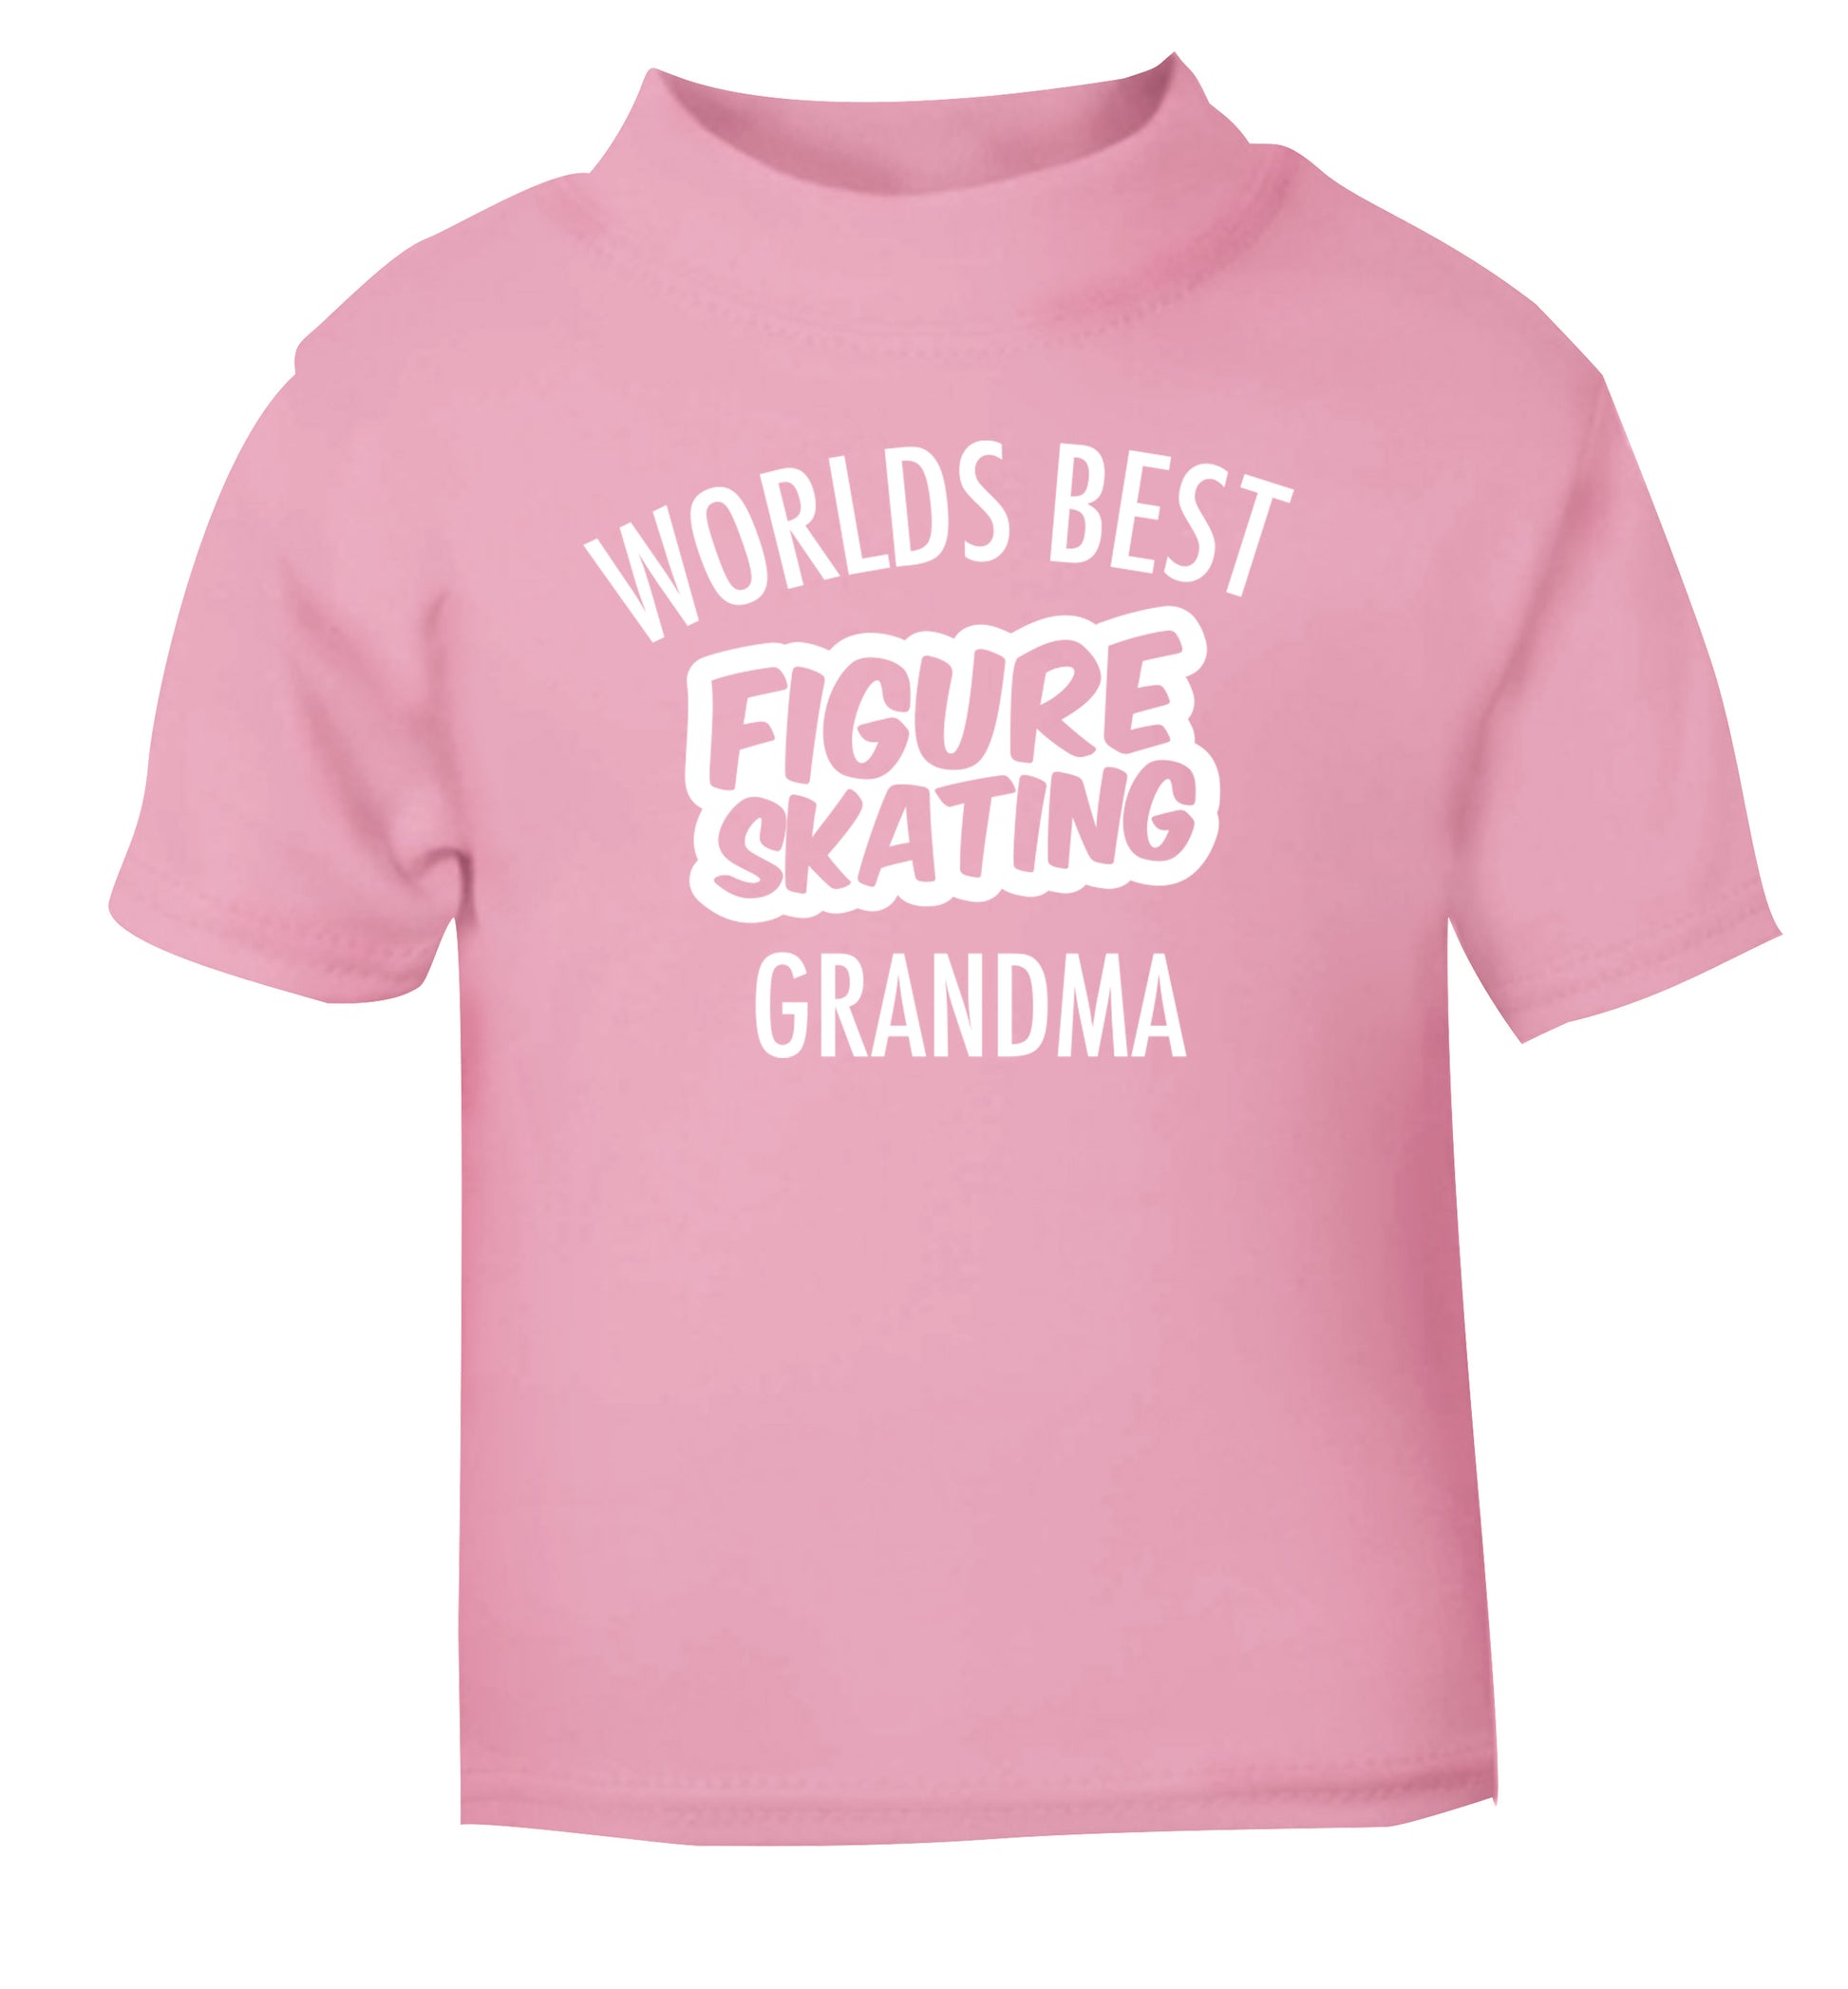 Worlds best figure skating grandma light pink Baby Toddler Tshirt 2 Years